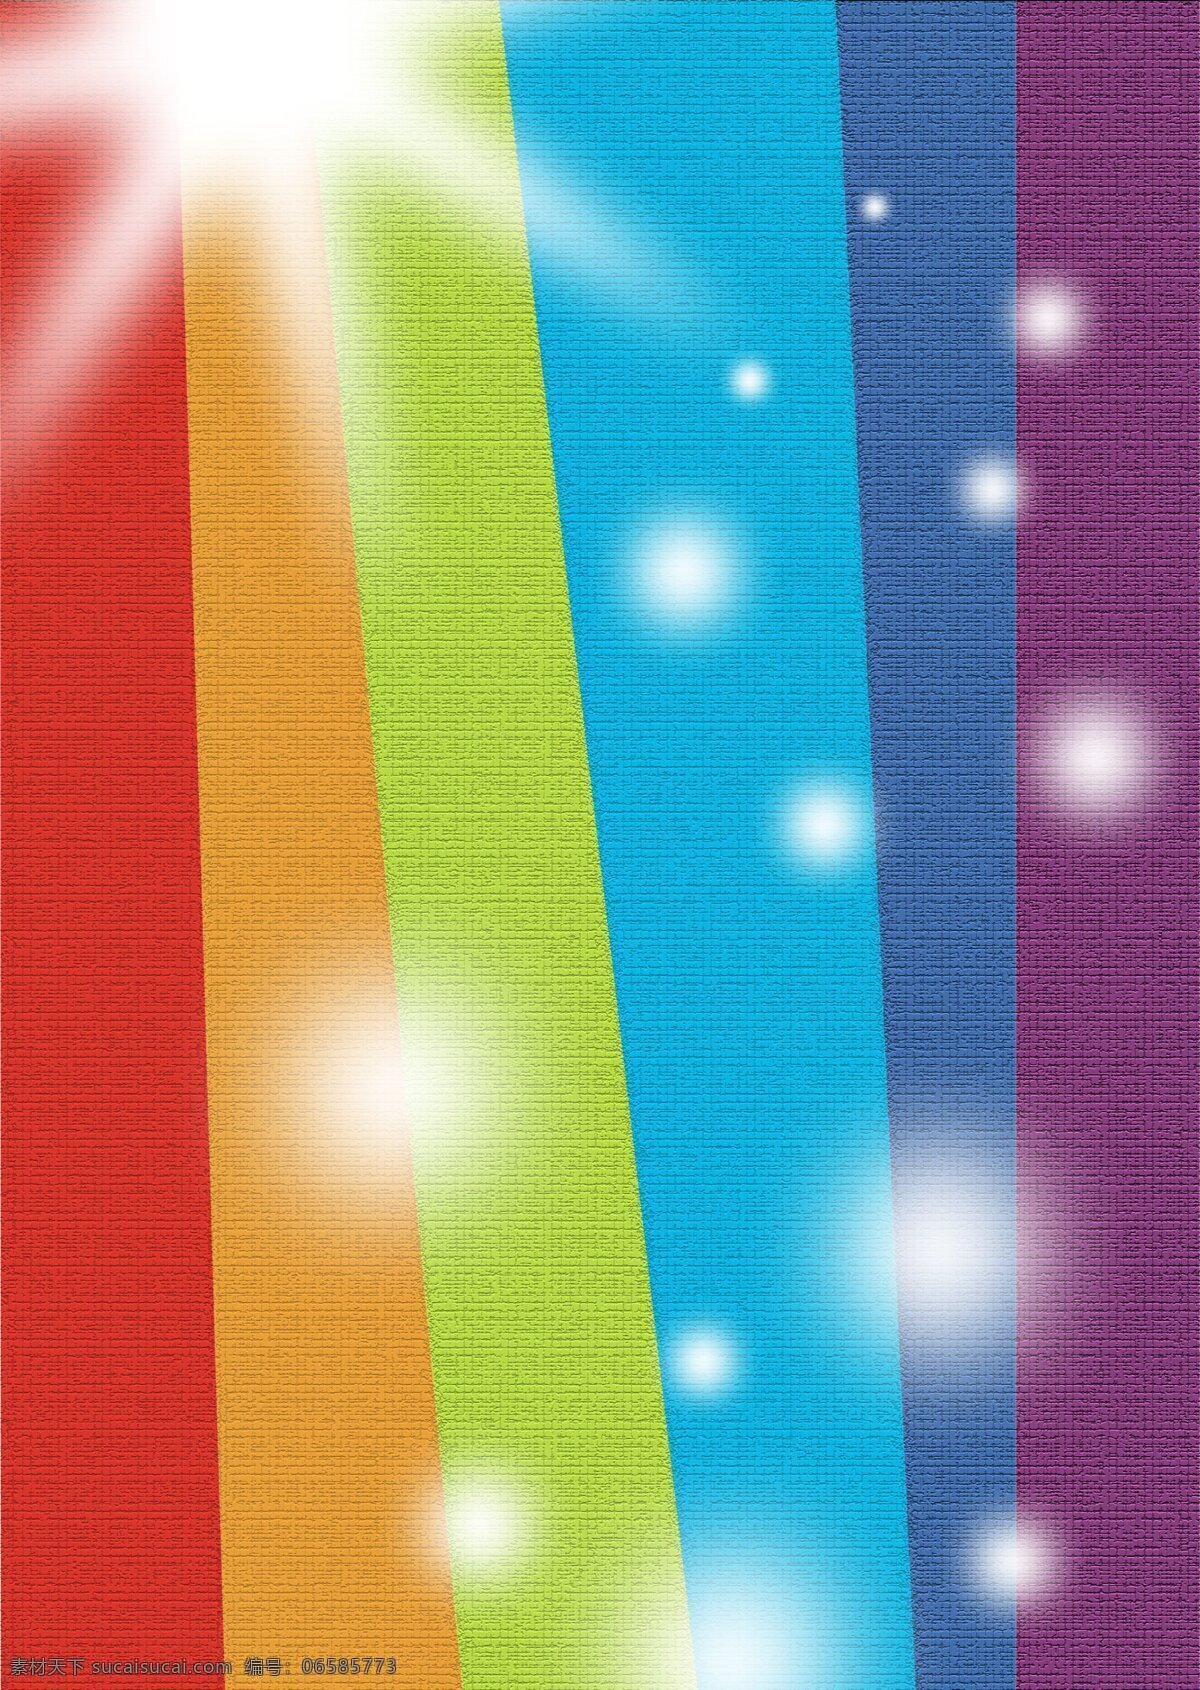 背景底纹 底纹边框 红黄蓝 简洁 糖果色 五彩缤纷 天光设计素材 天光模板下载 天光 彩虹的 星星 彩色的 童年记忆 鲜艳的 矢量图 其他矢量图